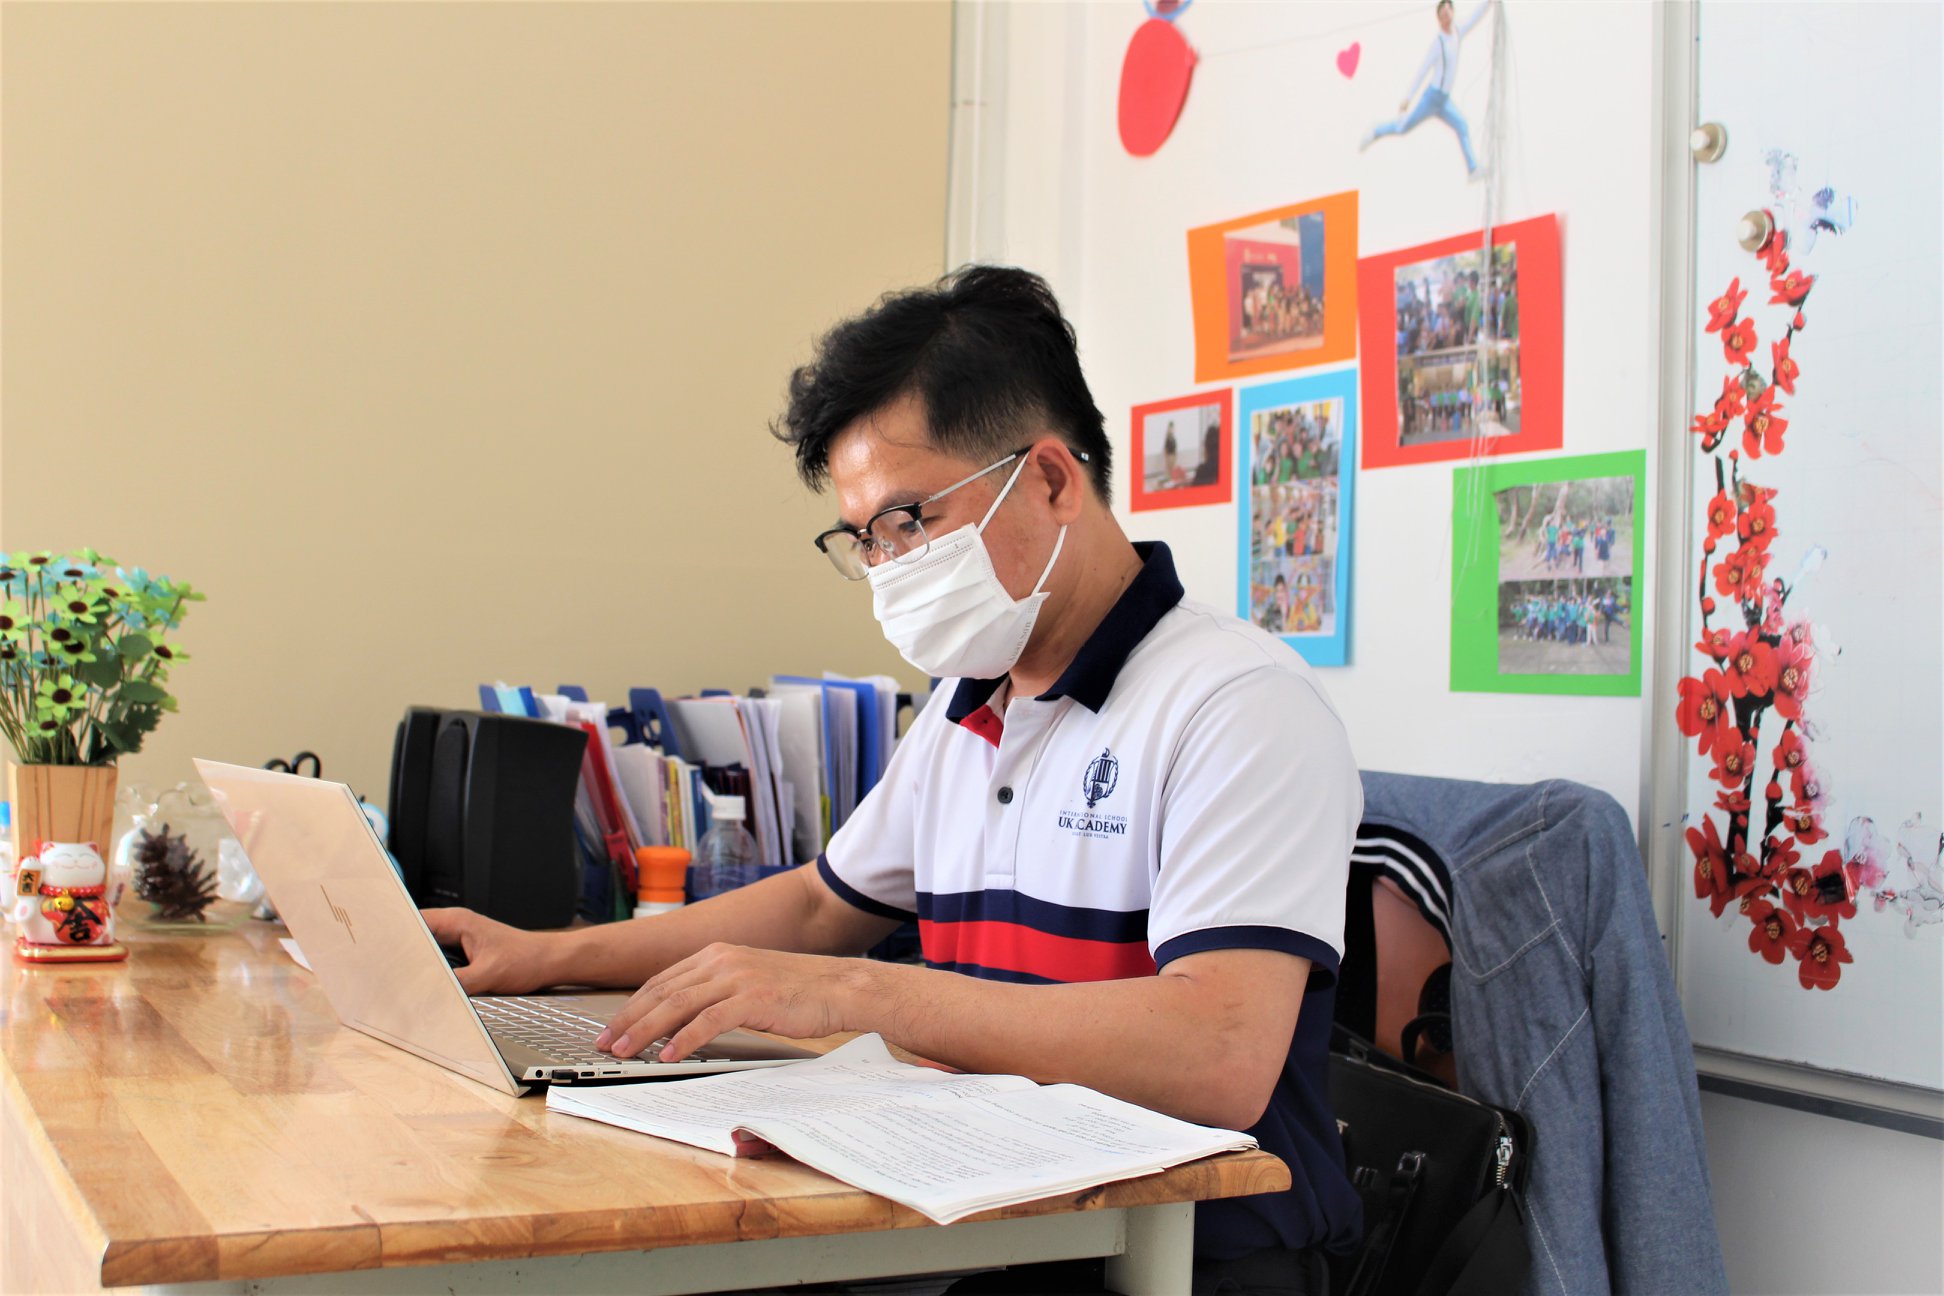 Xây dựng trường học thông minh tại Trường Tiểu học Triệu Thị Trinh  Quận  10 trong bối cảnh Cách mạng Công nghiệp 40  Ngành GDĐT TPHồ Chí Minh